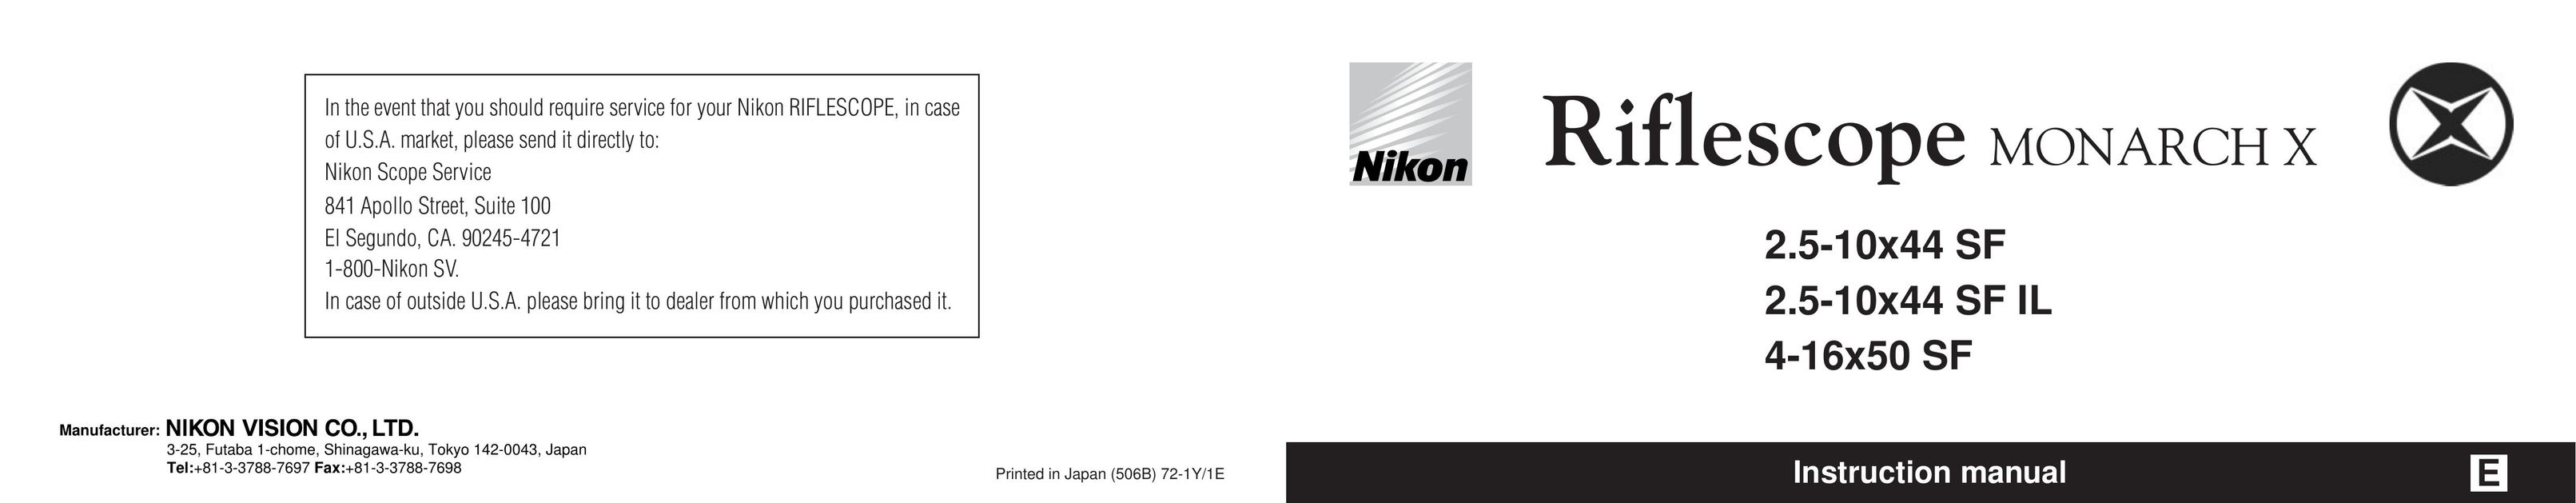 Nikon 10x44 SF IL Binoculars User Manual